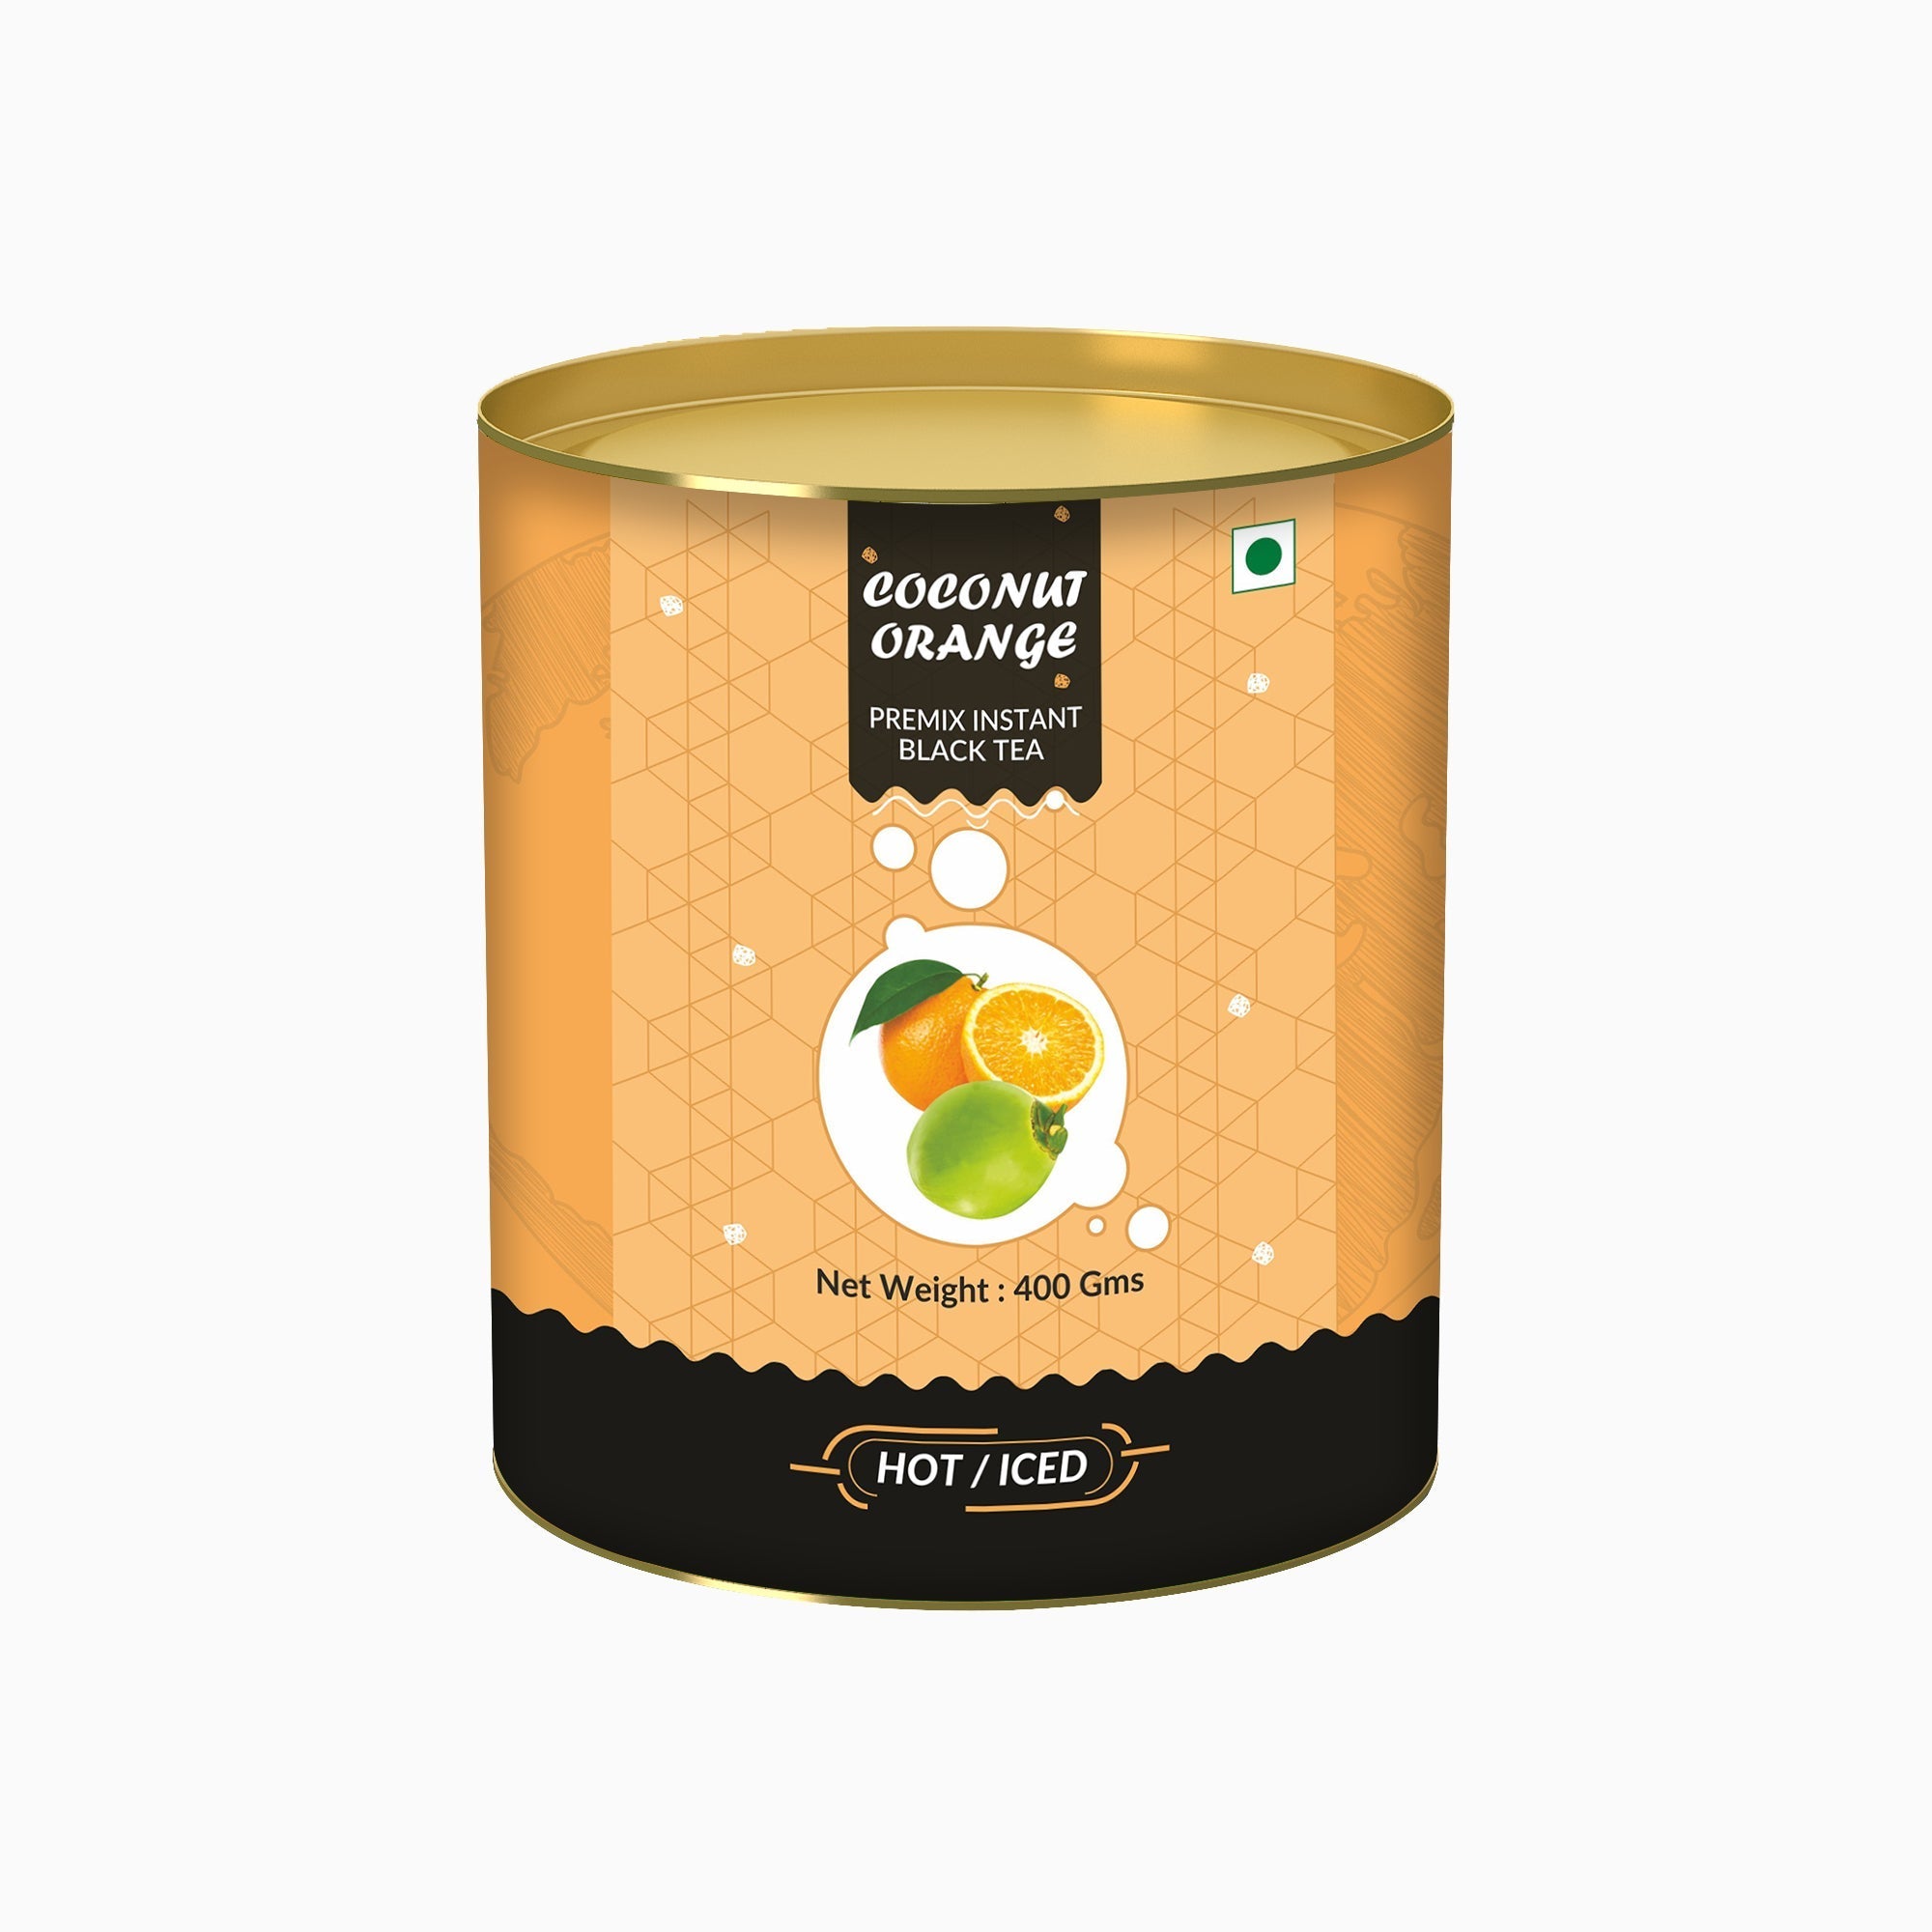 Cococnut Orange Flavored Instant Black Tea - 400 gms